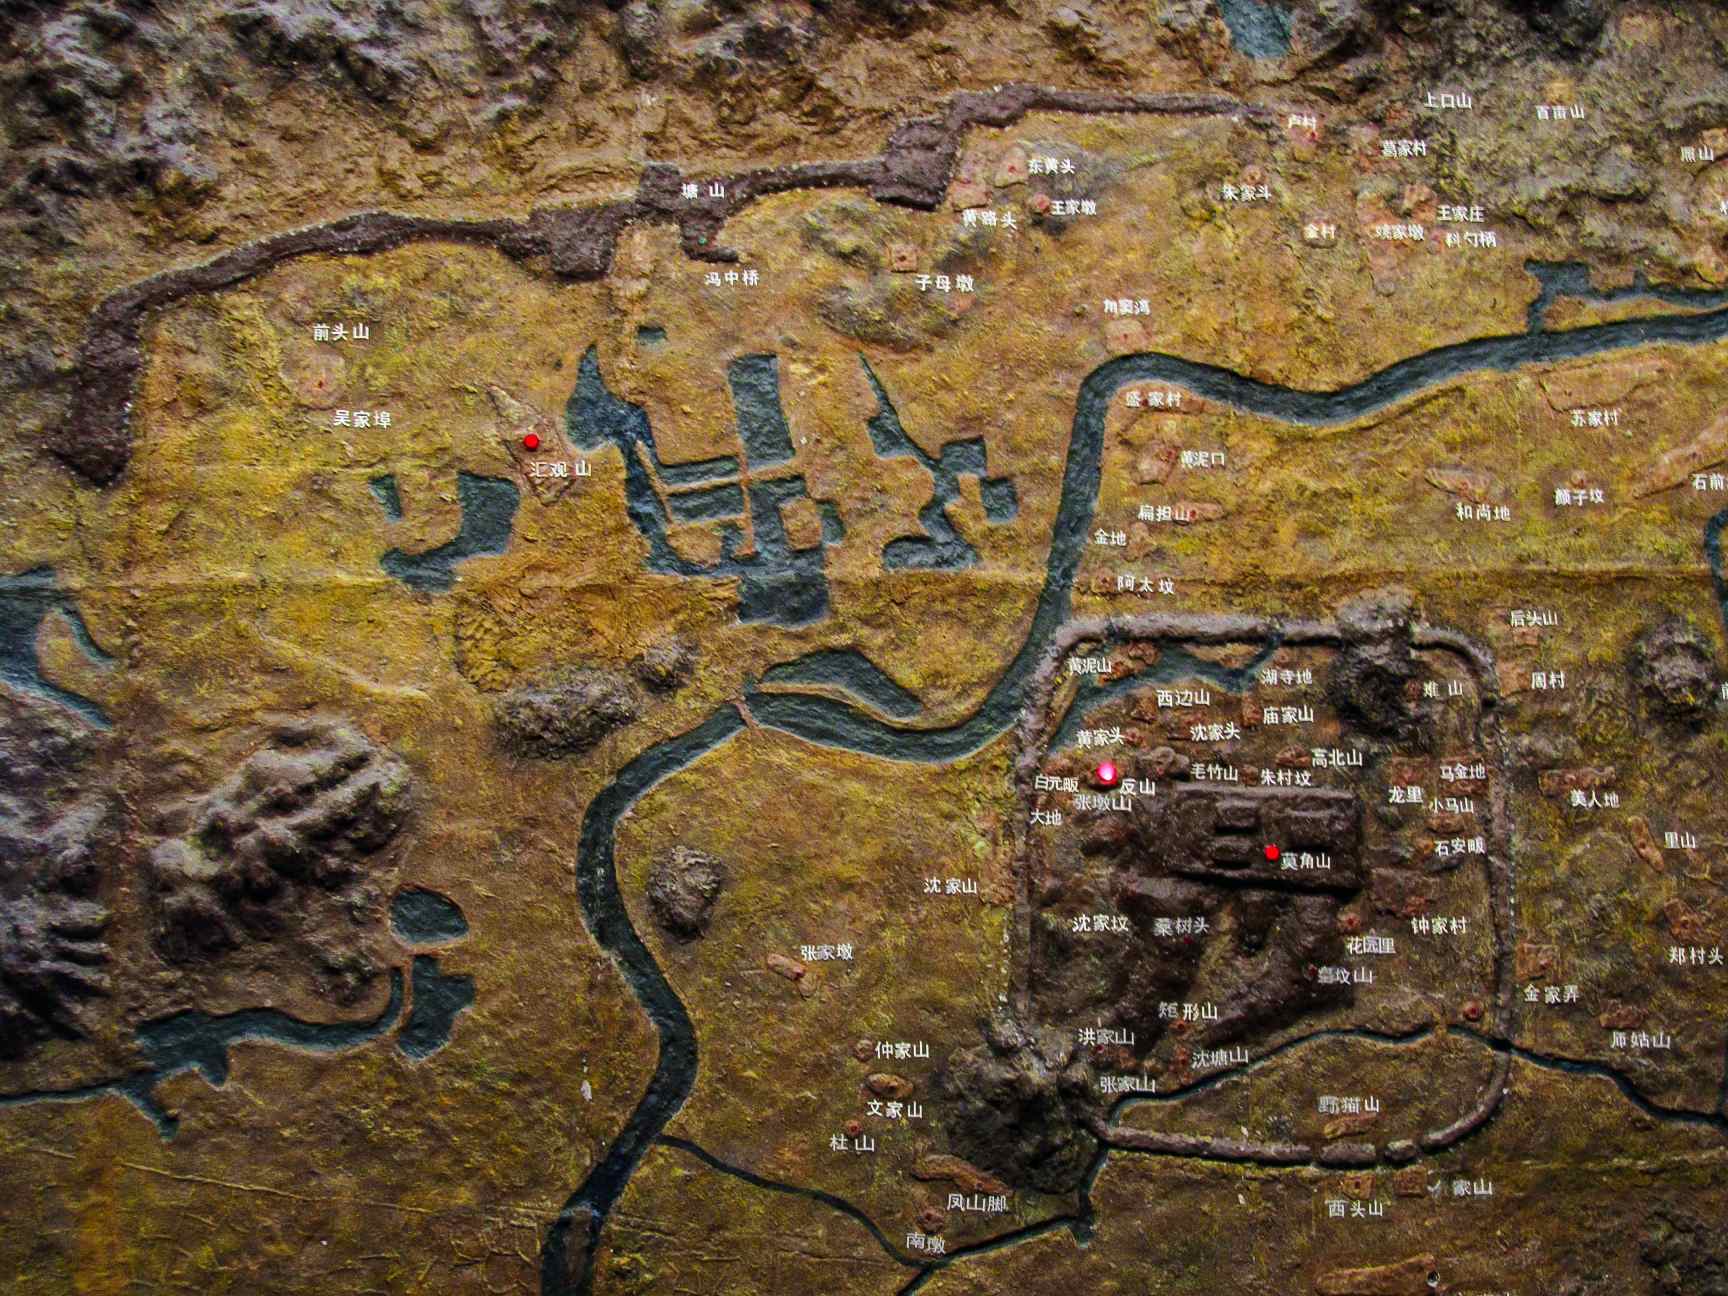 Modello dell'antica città di Liangzhu, esposto nel Museo Liangzhu.